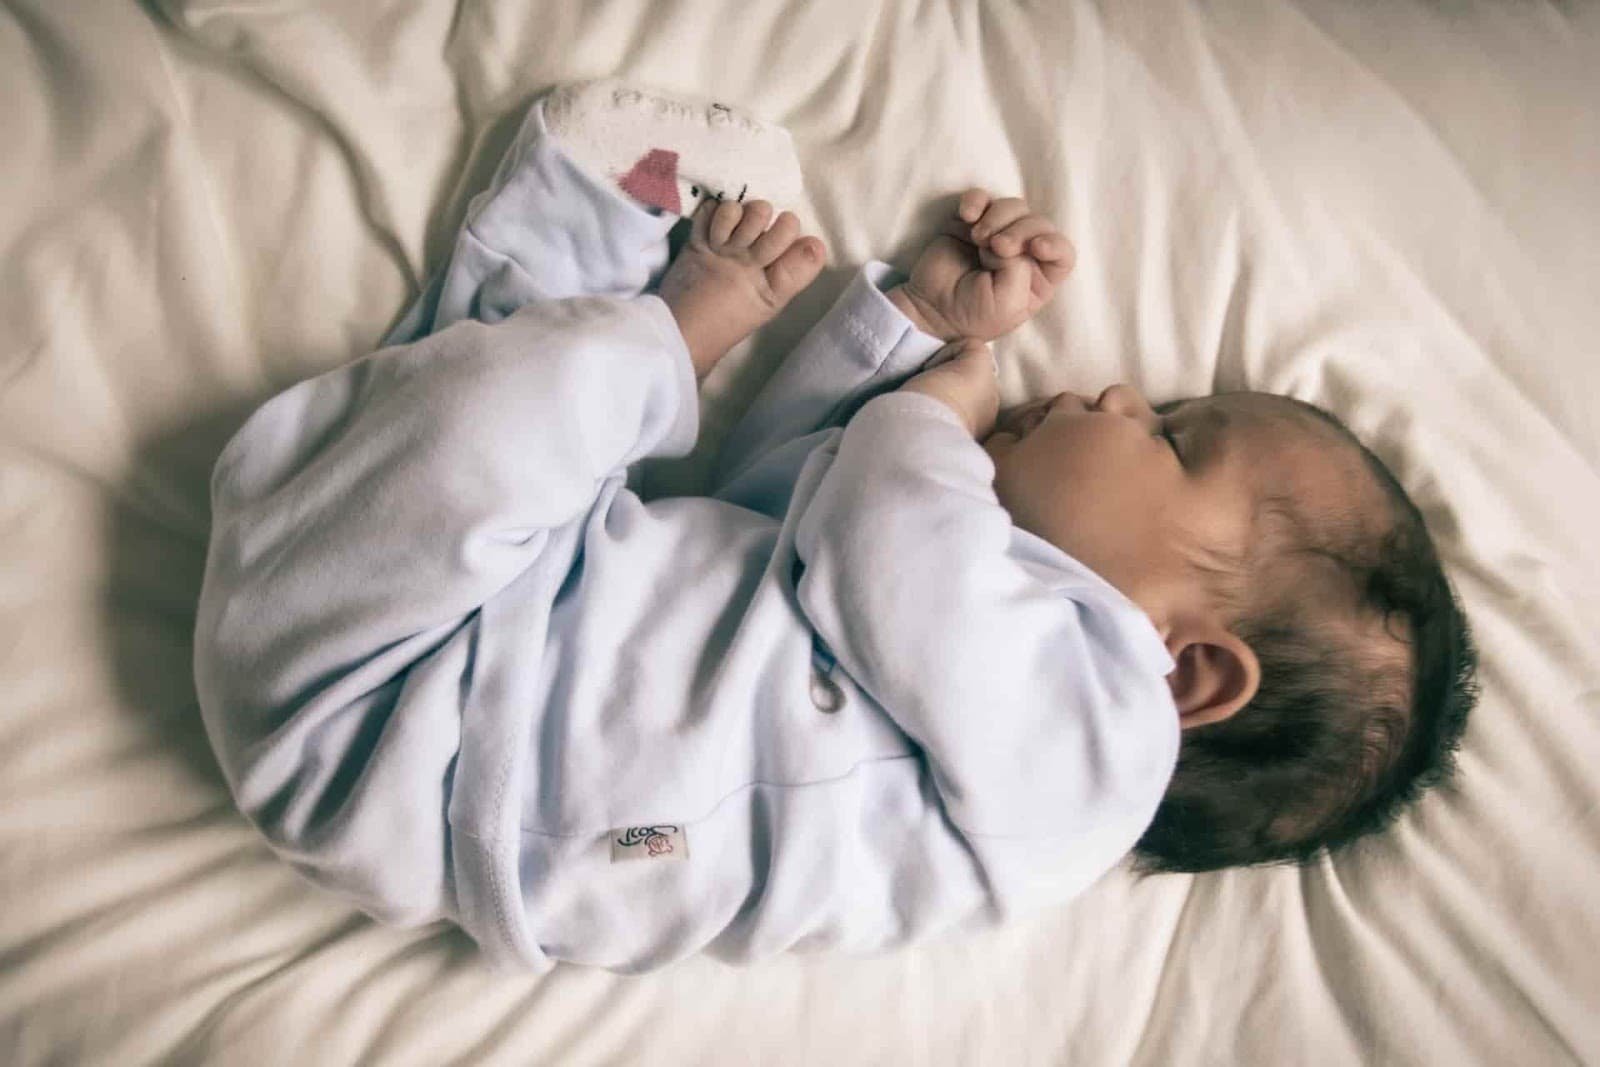 Le bruit blanc d'un sèche-cheveux aide-t-il un bébé à s'endormir ? Kadolis